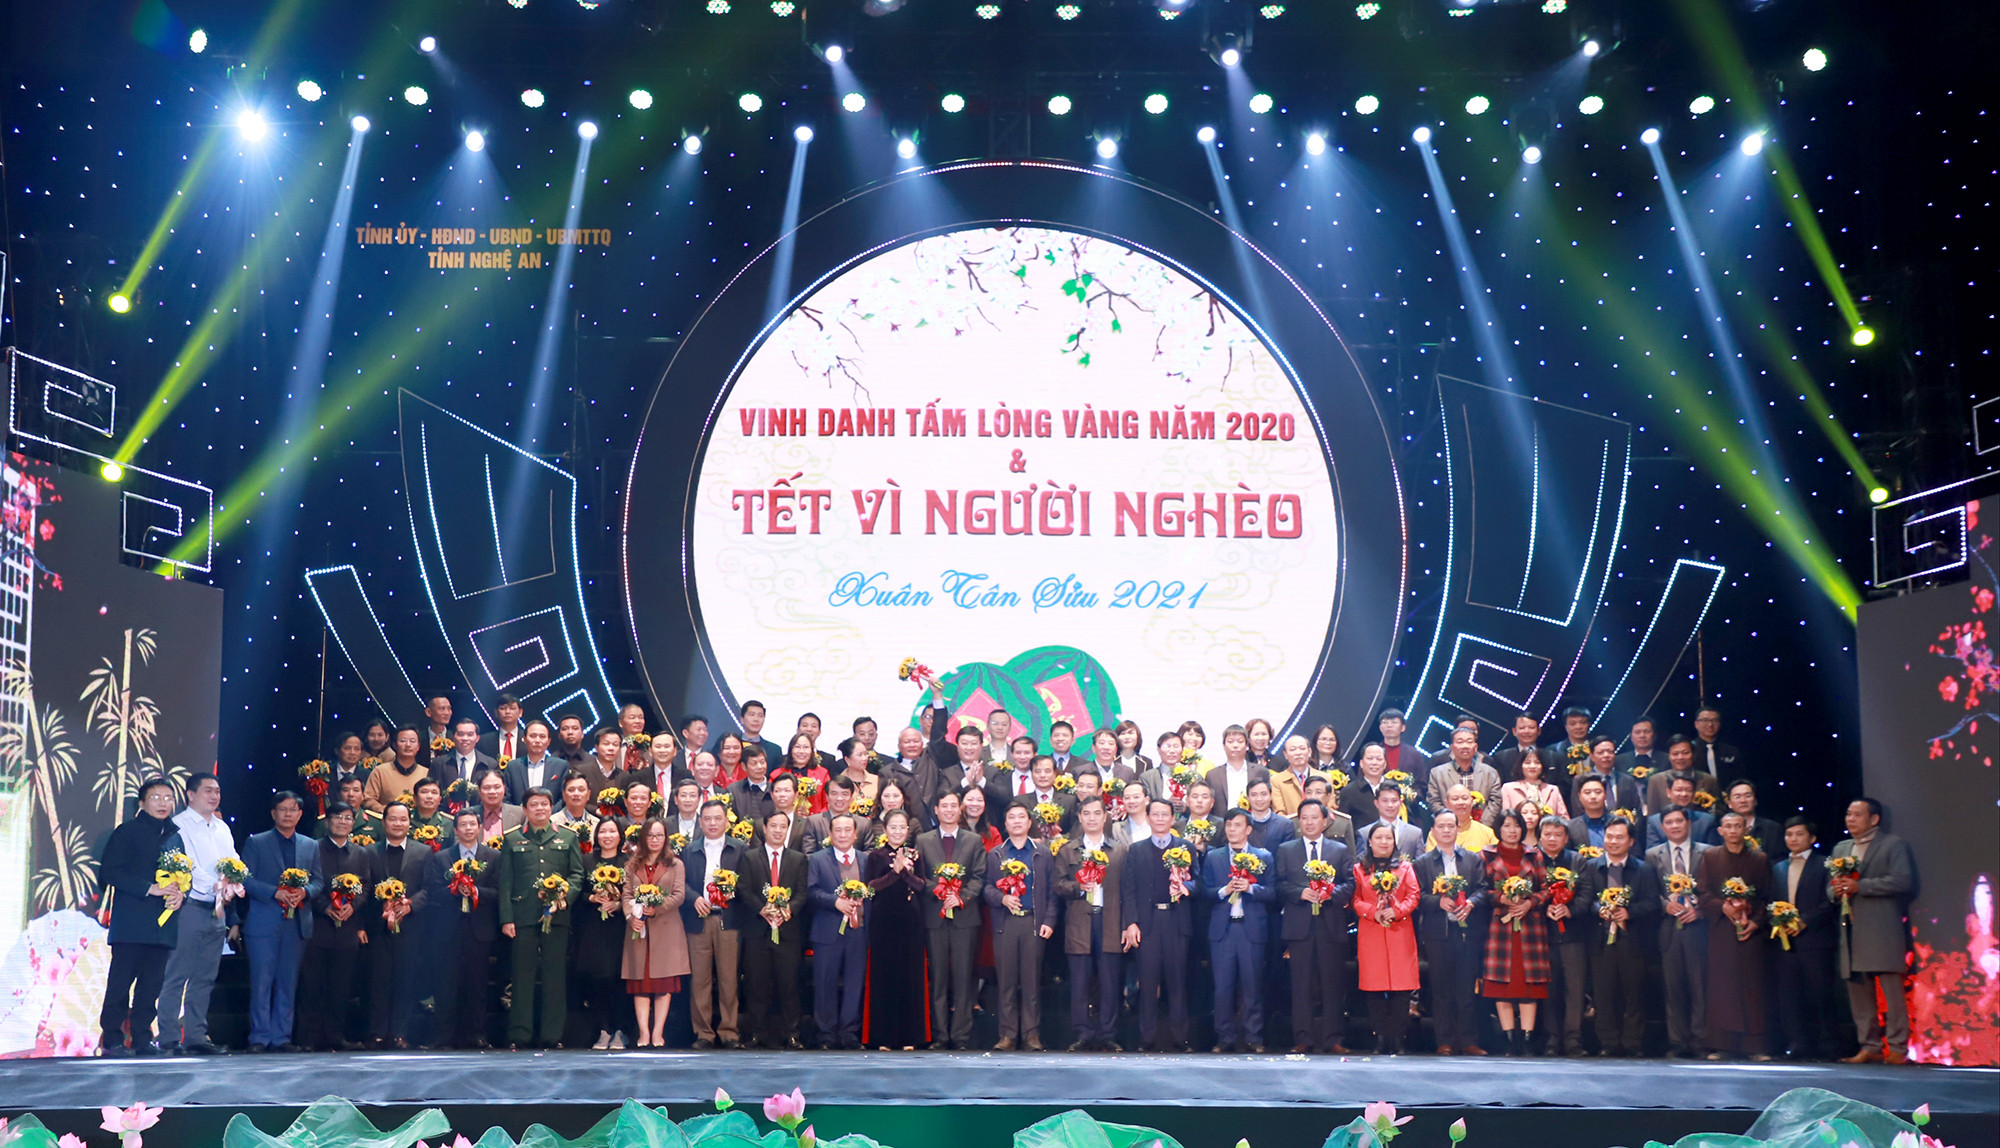 Lãnh đạo tỉnh Nghệ An tiếp nhận sự ủng hộ của các cá nhân, tập thể, doanh nghiệp cho chương trình Tết vì người nghèo Xuân Tân Sửu 2021. Ảnh: Thành Duy